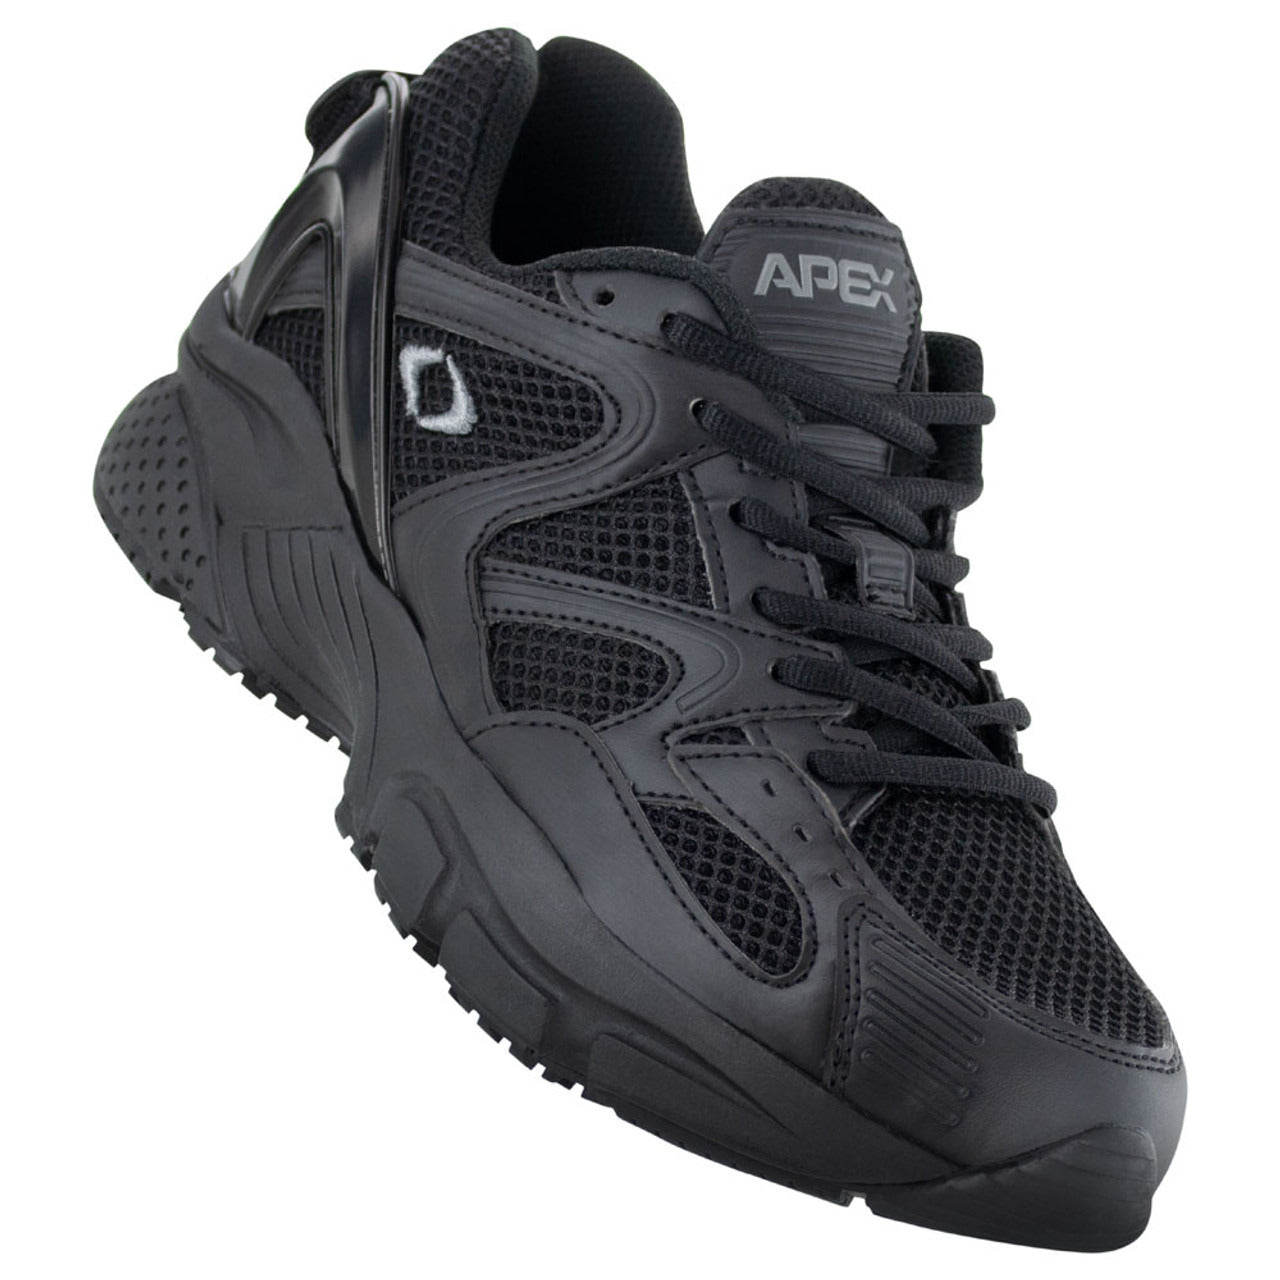 Apexfoot Men's Boss Runner Active Shoe - Black - Medium (D)